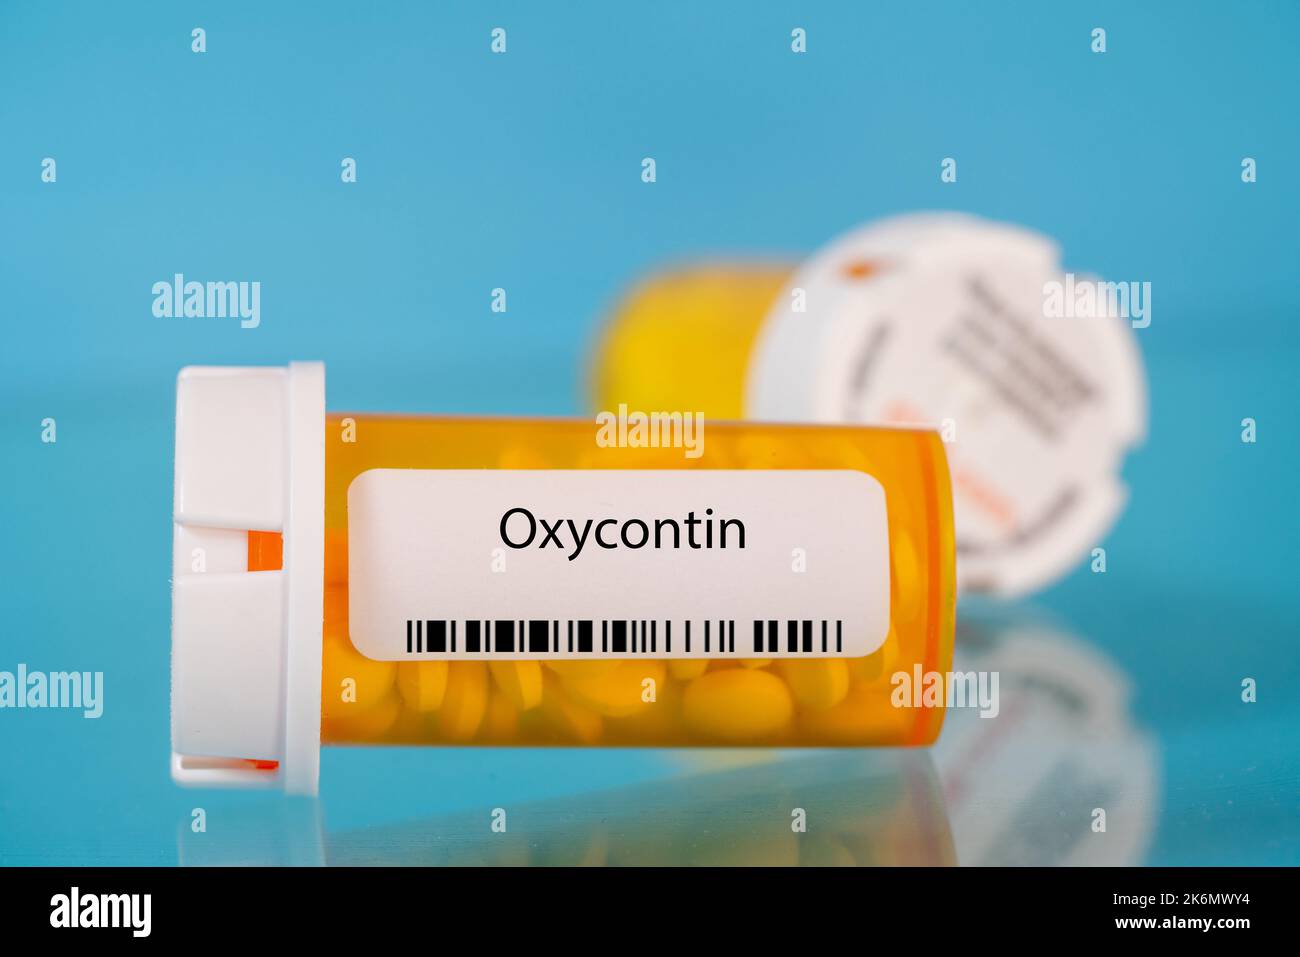 Flacon de pilules OxyContin, image conceptuelle Banque D'Images